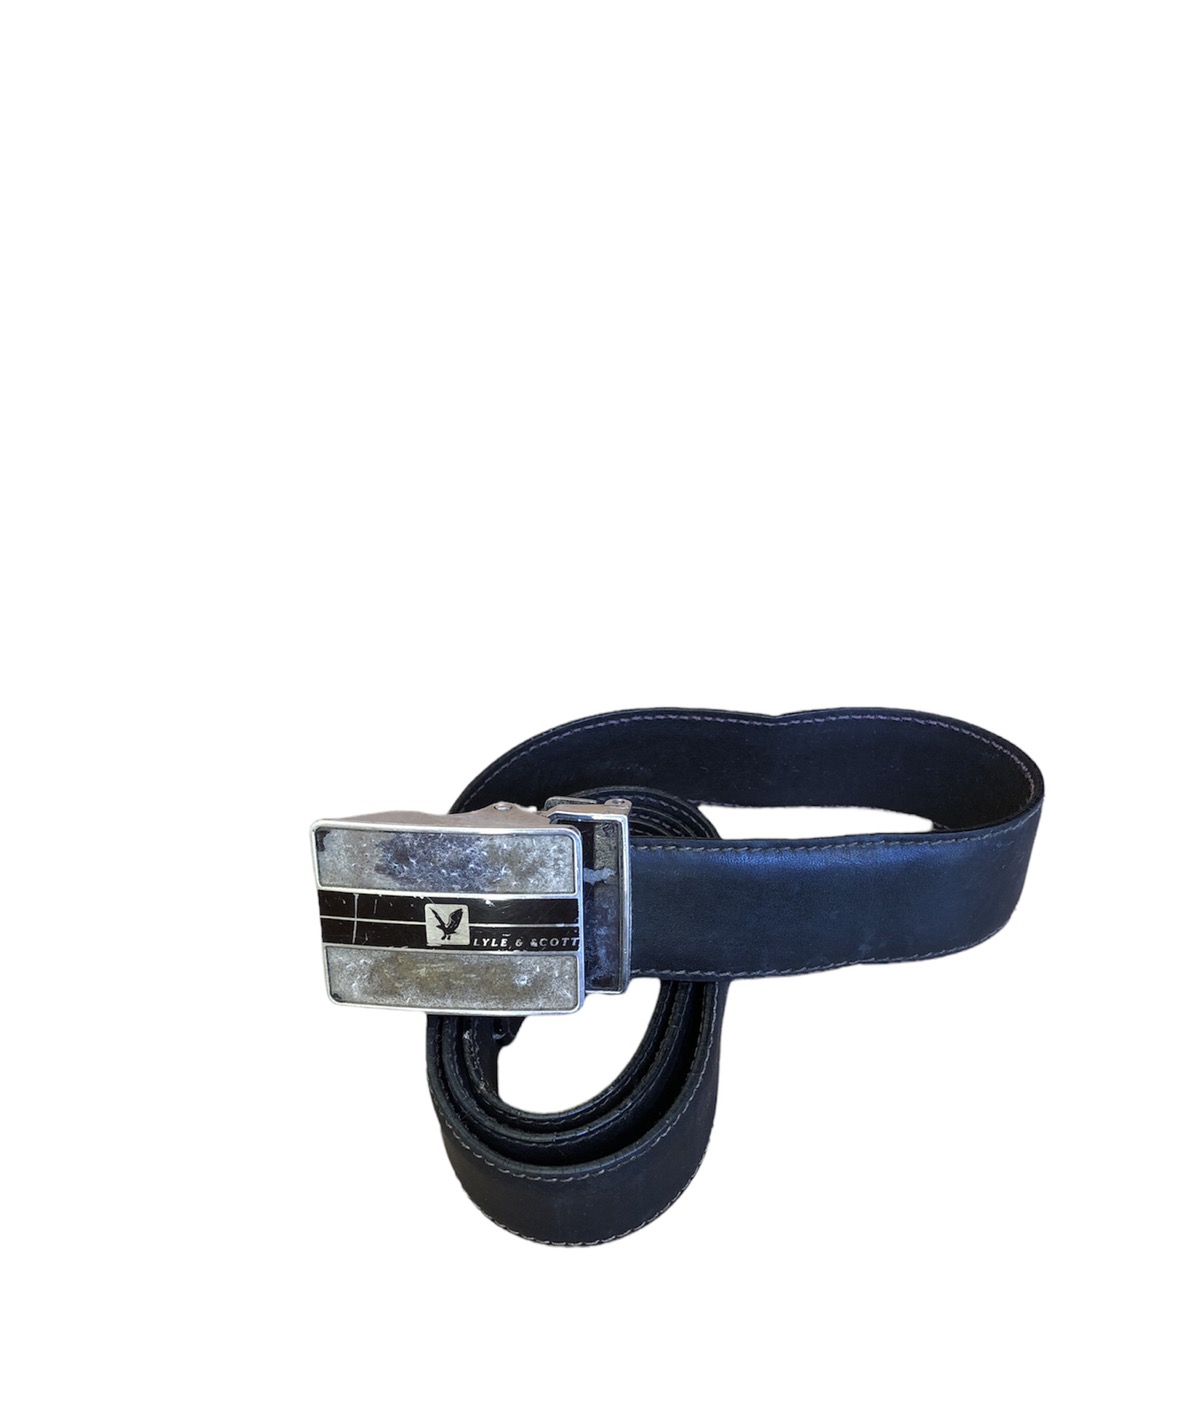 Buckle - Vintage Lyle&Scott Office Style Buckle Belt - 1